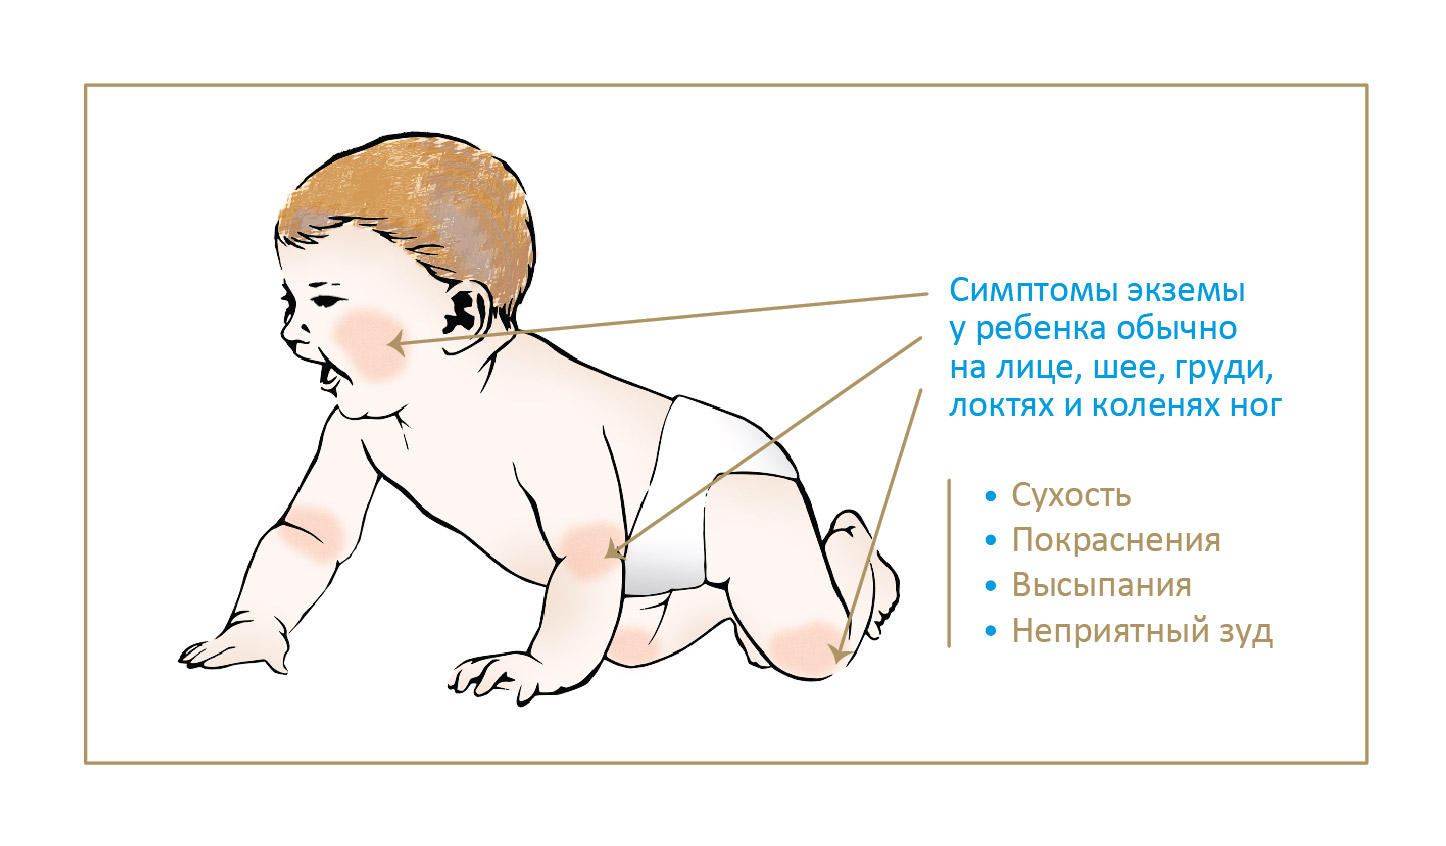 Симптомы экземы у ребенка обычно на лице, шее, груди, локтях и коленях ног